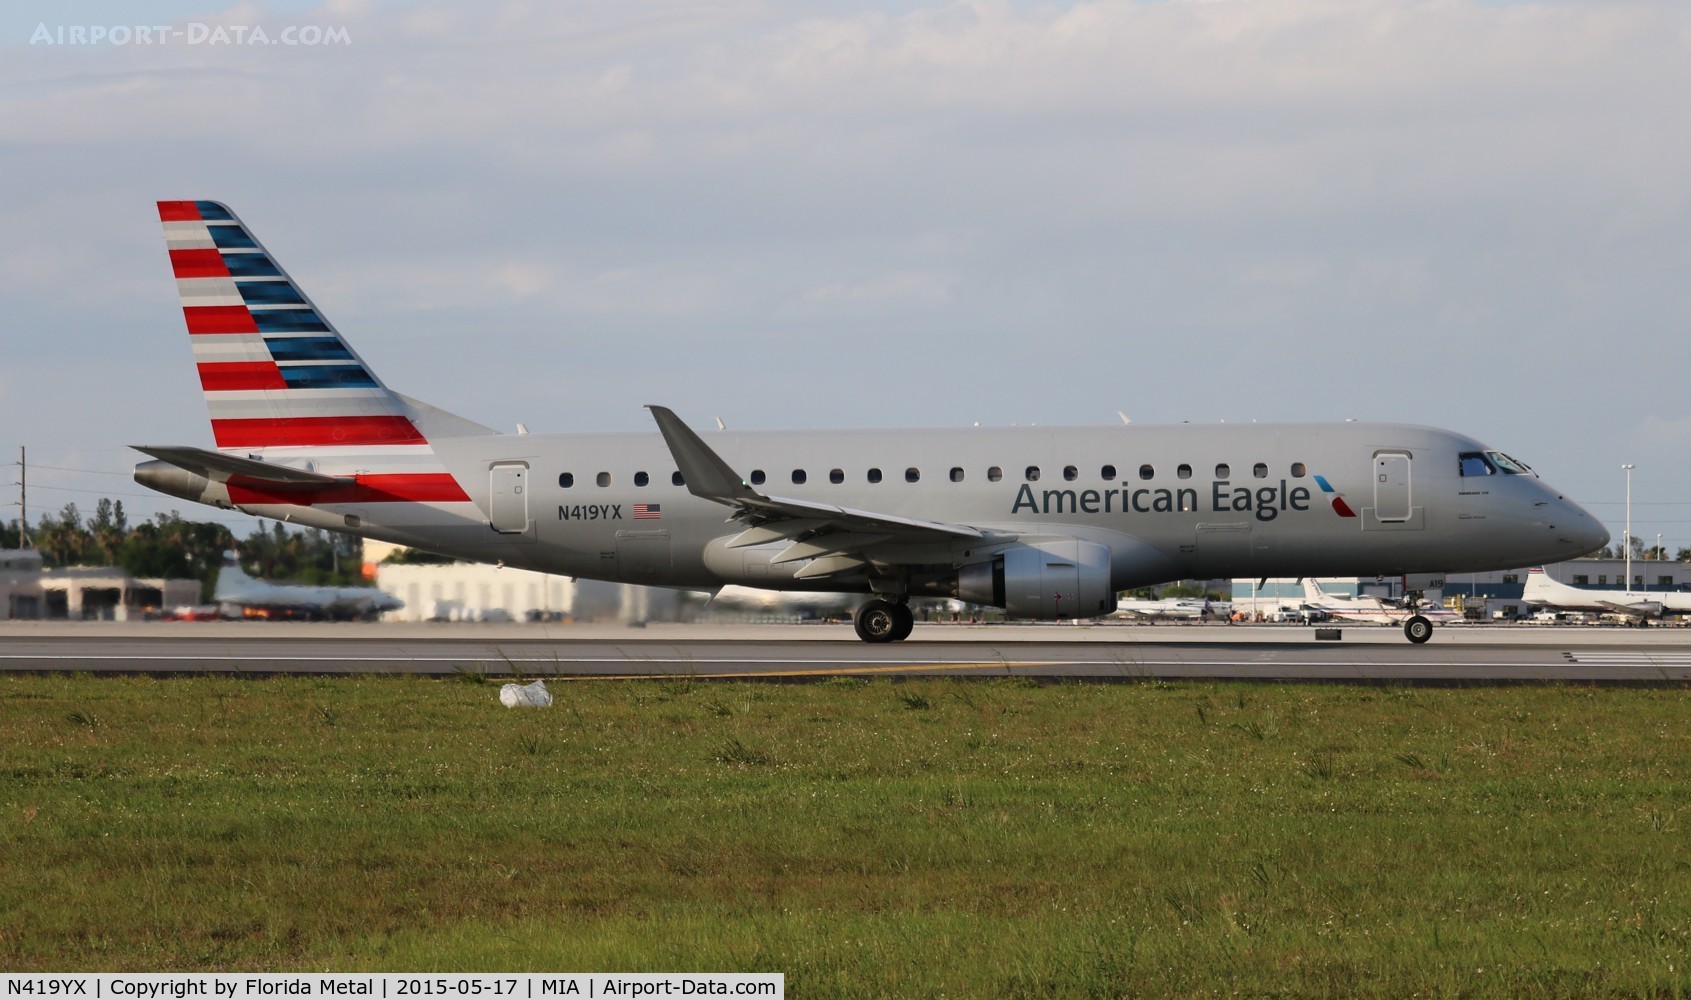 N419YX, 2013 Embraer 175LR (ERJ-170-200LR) C/N 17000384, American Eagle